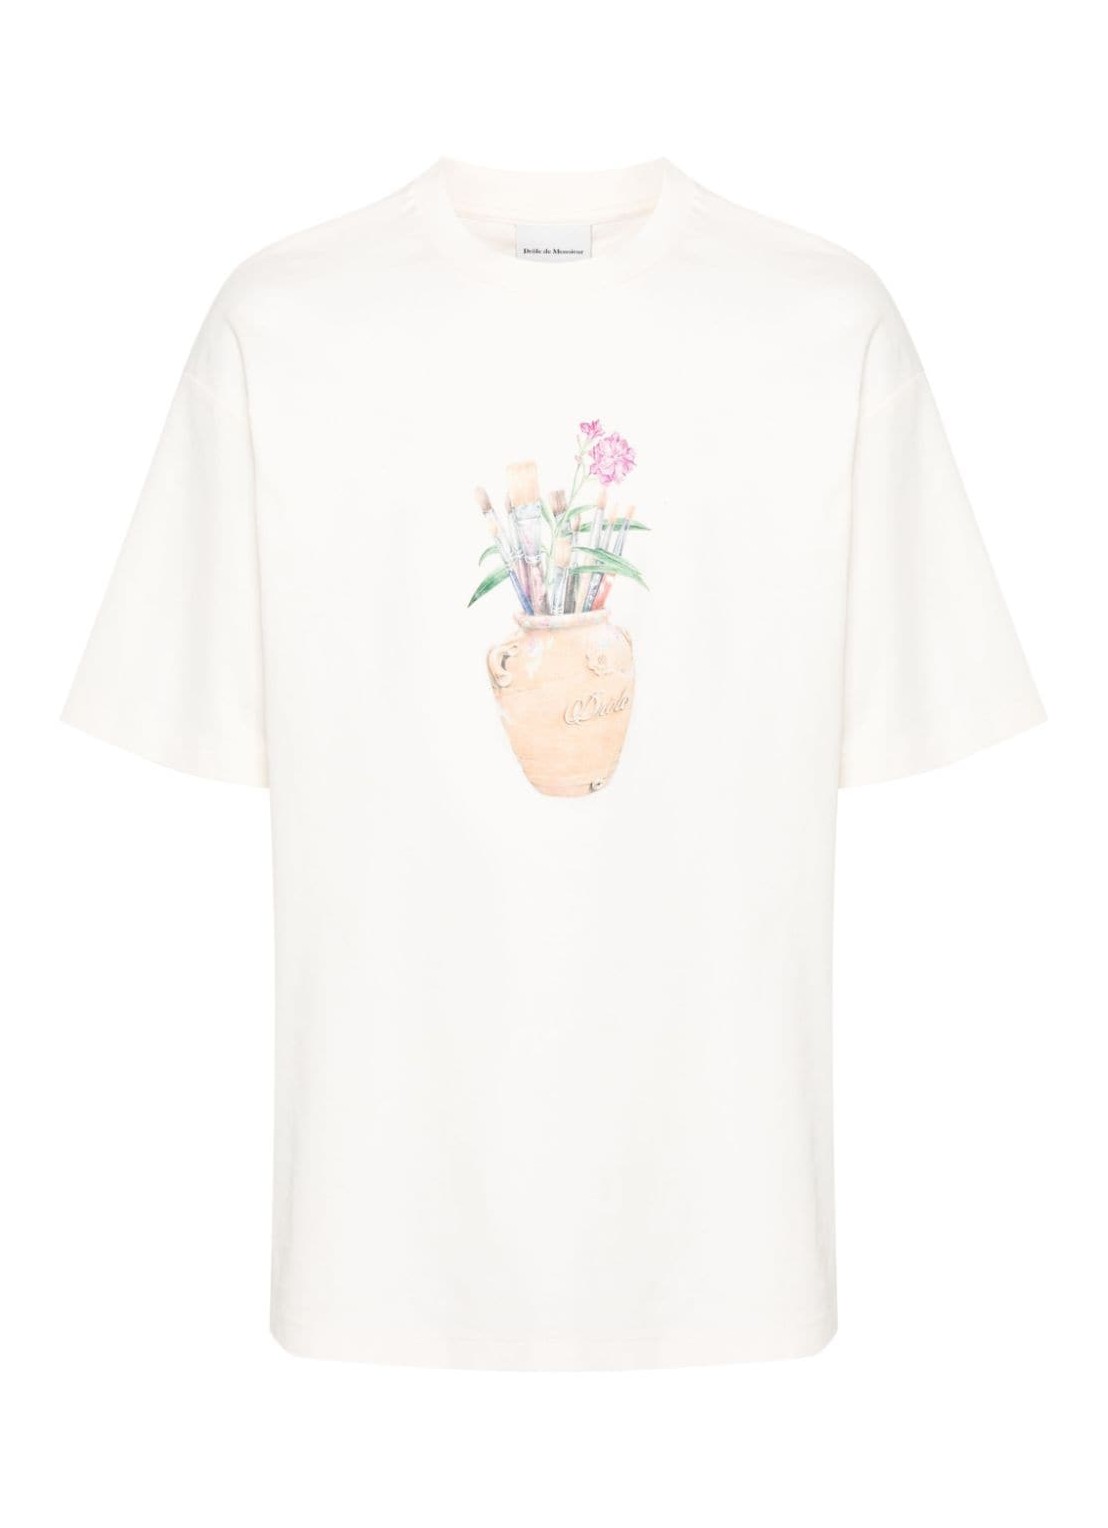 Camiseta drole de monsieur t-shirt man le t-shirt pinceaux dts183co002cm cream talla beige
 